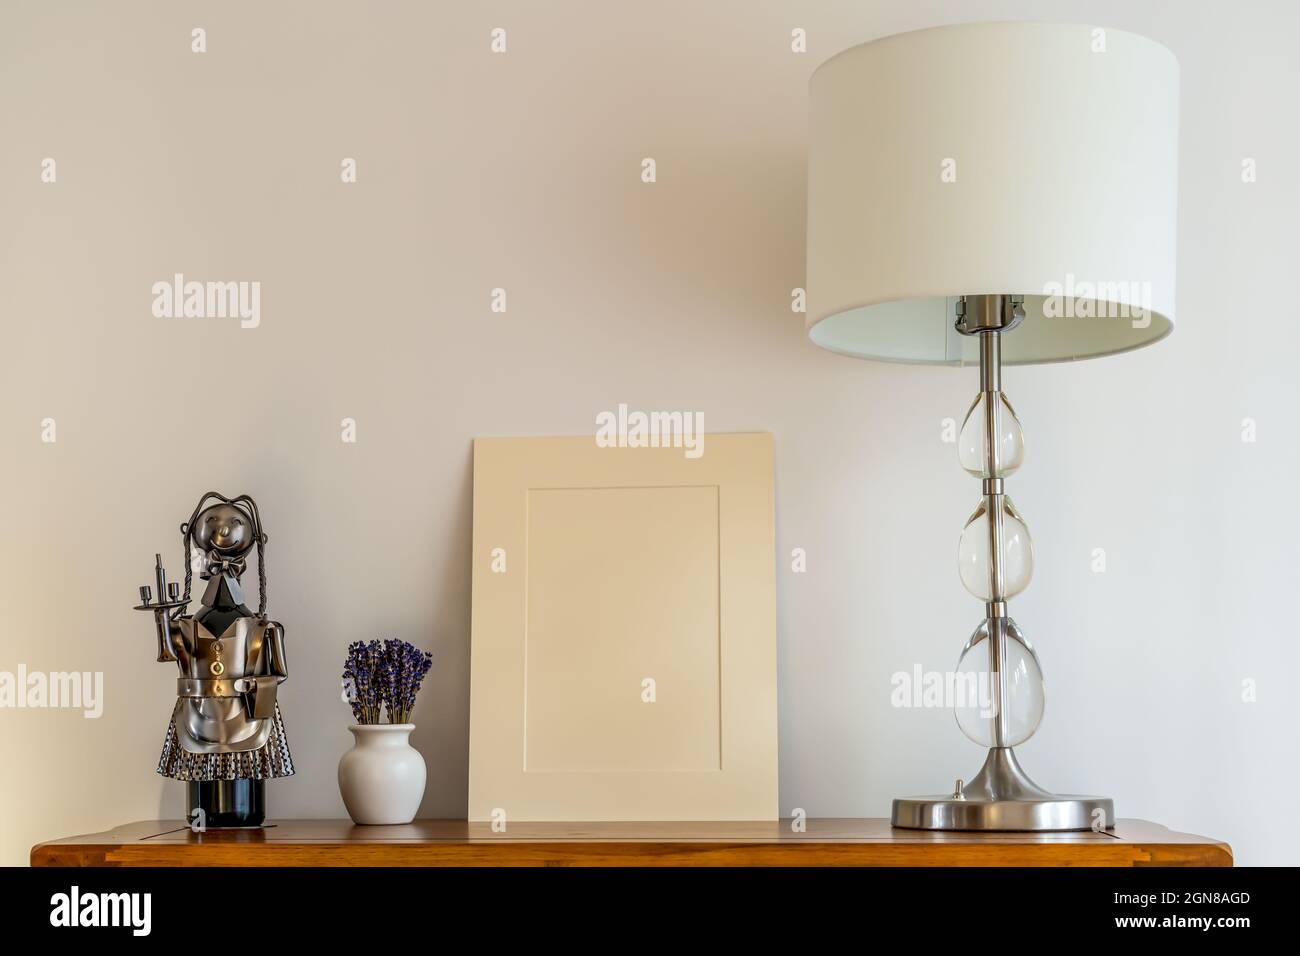 gros plan sur le support d'image beige still life, lampe avec abat-jour et pot en porcelaine, arrangement floral lavande et porte-vin Banque D'Images